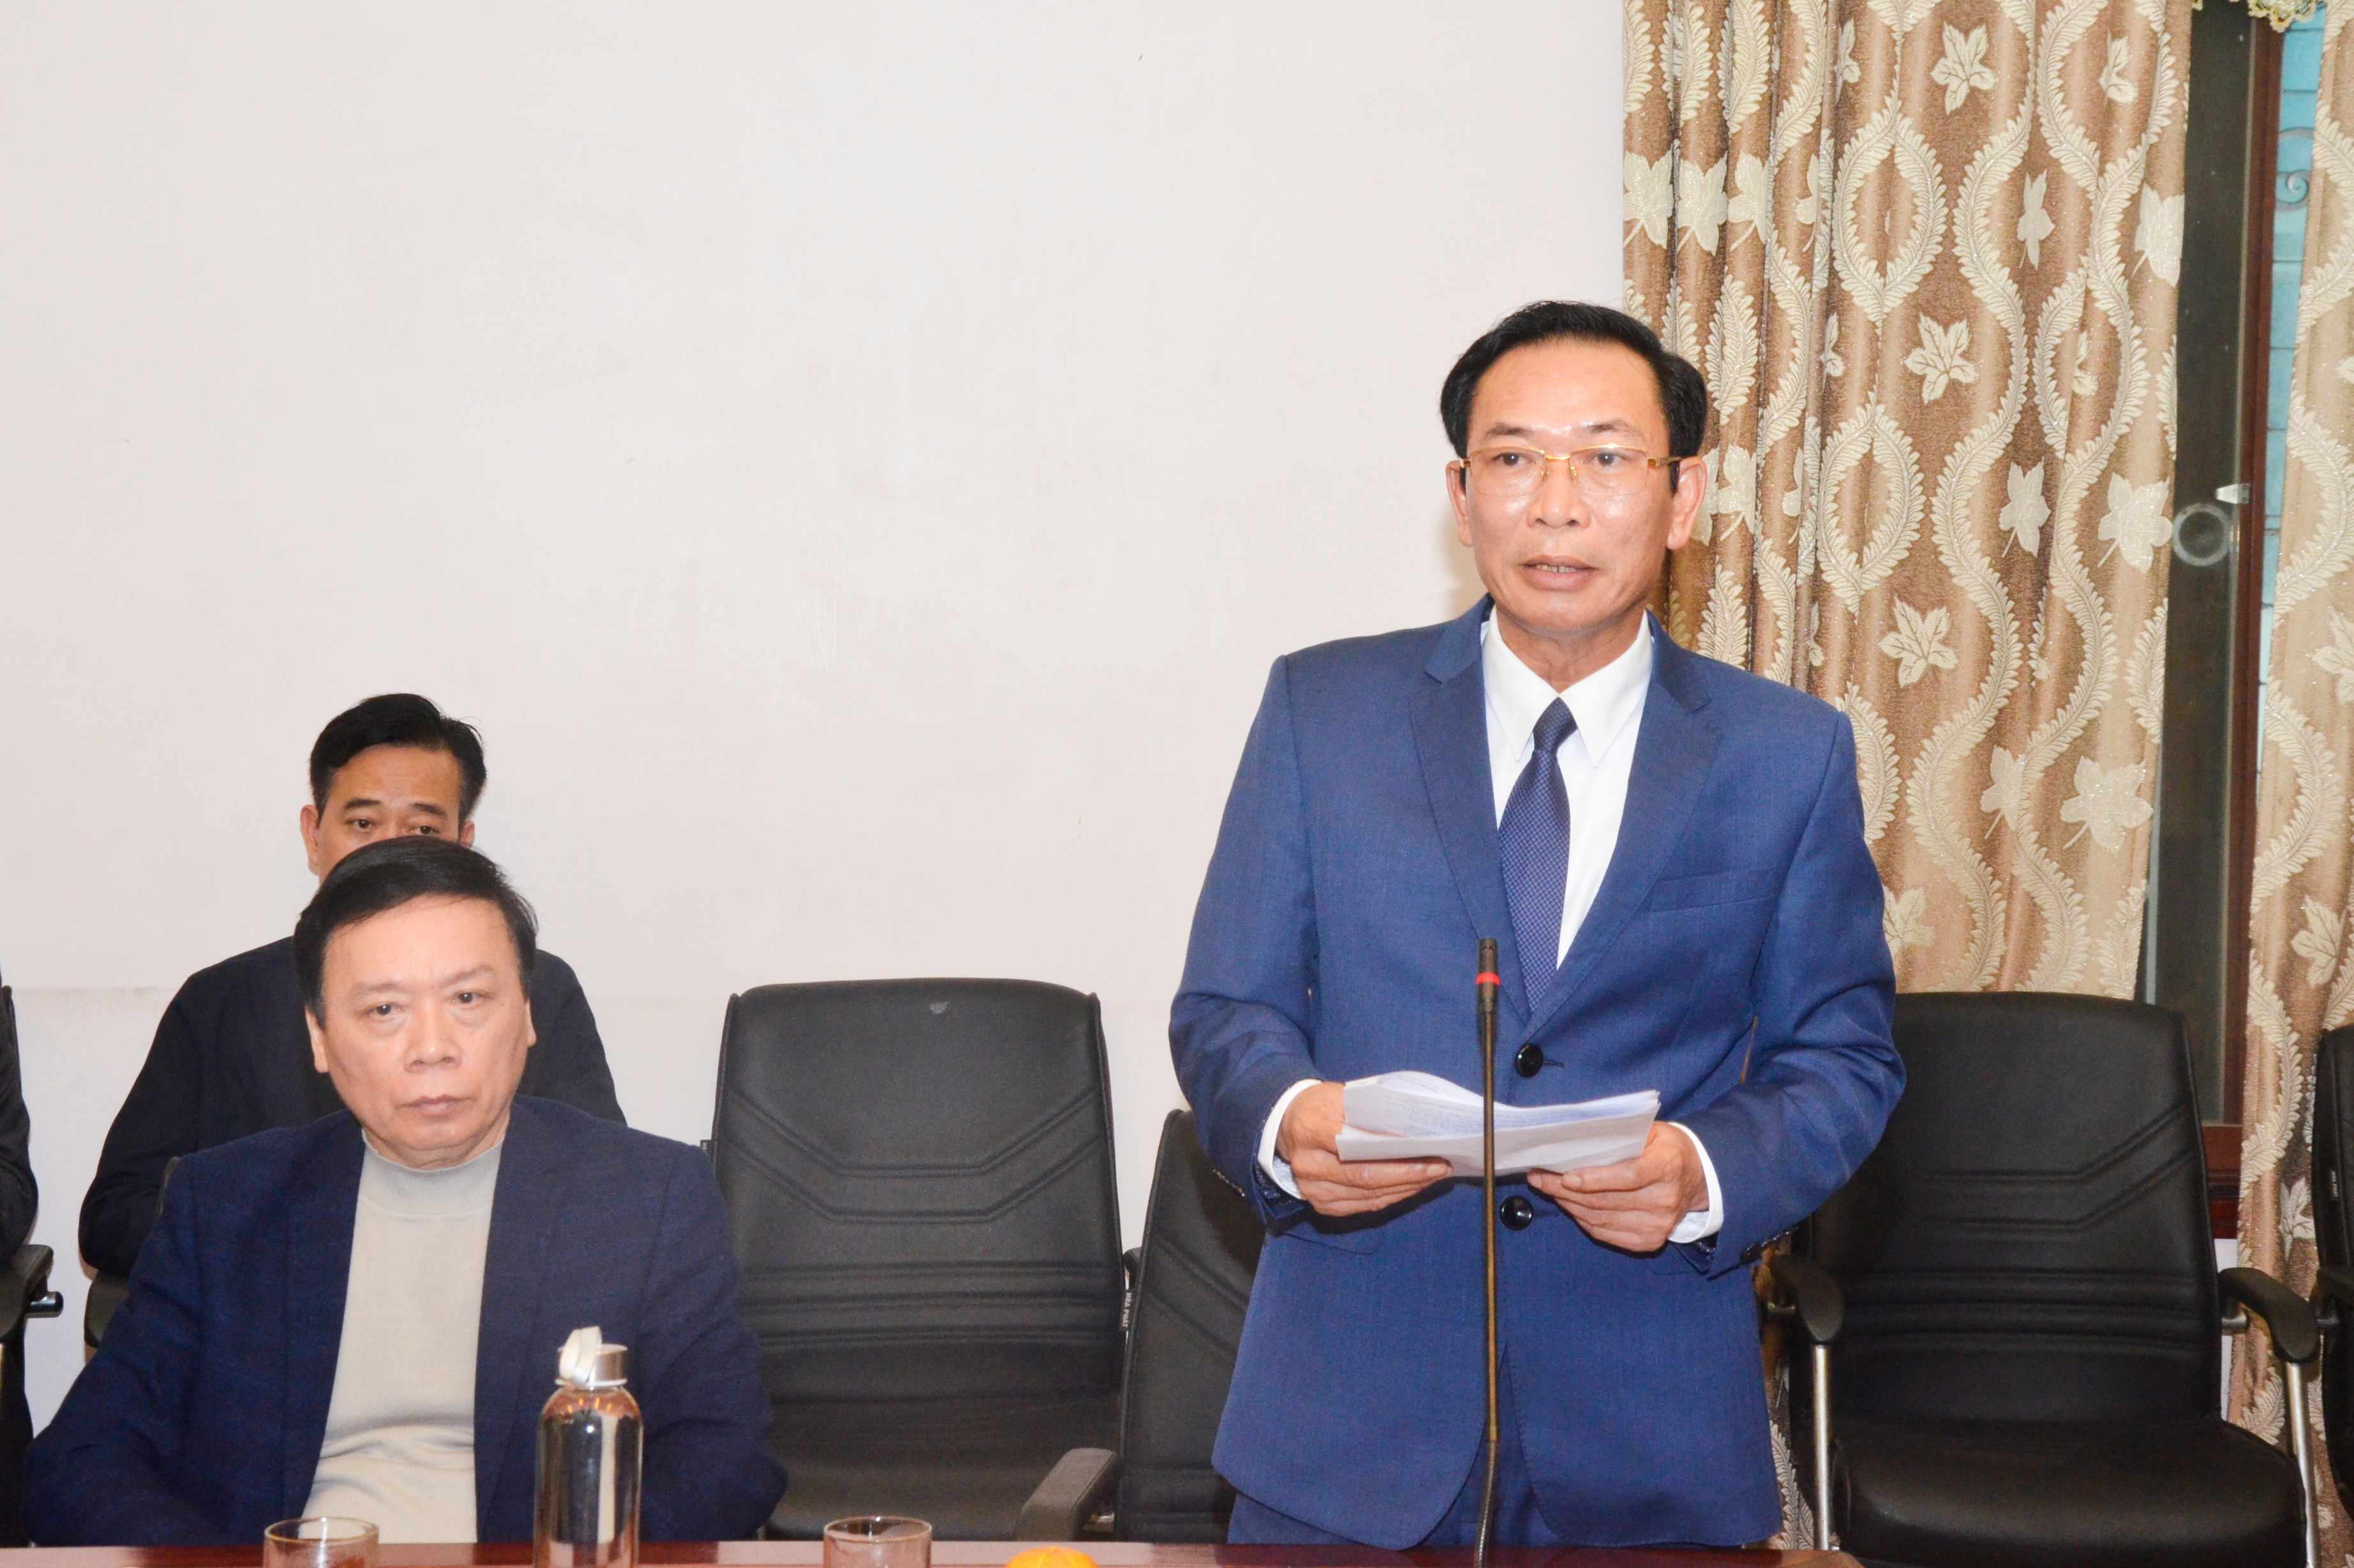 Giám đốc Sở Tài chính báo cáo kết quả thu ngân sách của tỉnh trong năm 2019. Ảnh: Thanh Lê